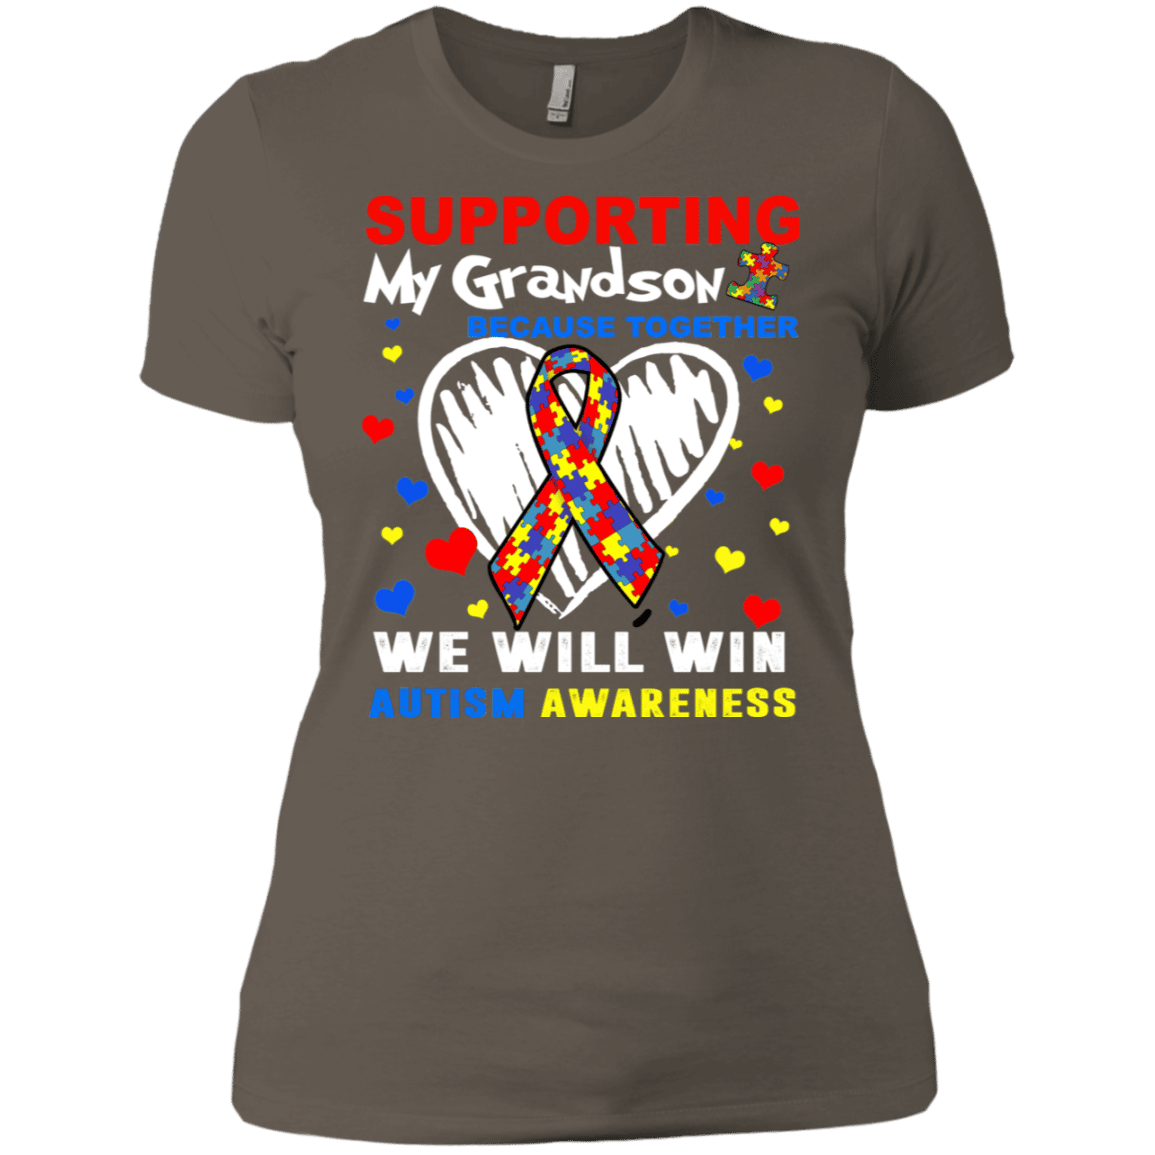 Supporting My Grandson Autism Awareness T Shirt â Tee Peeze